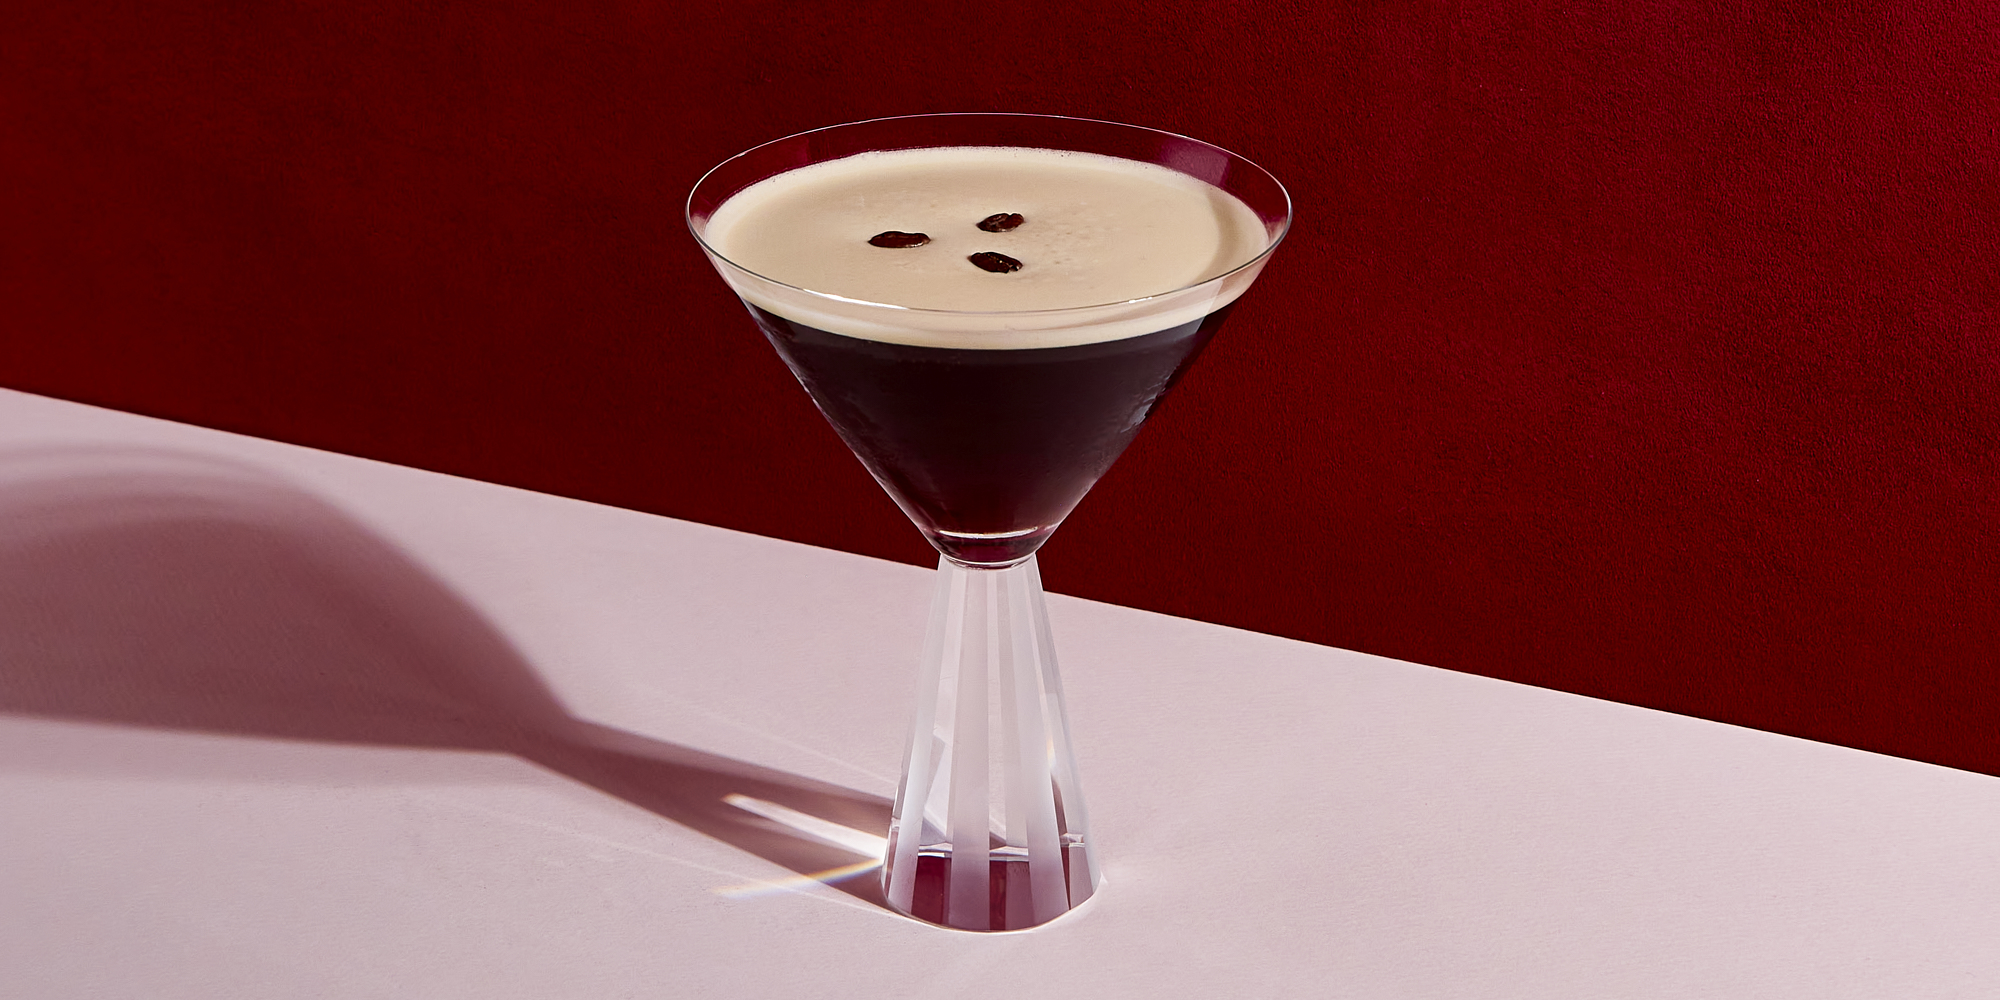 How to Make an Espresso Martini